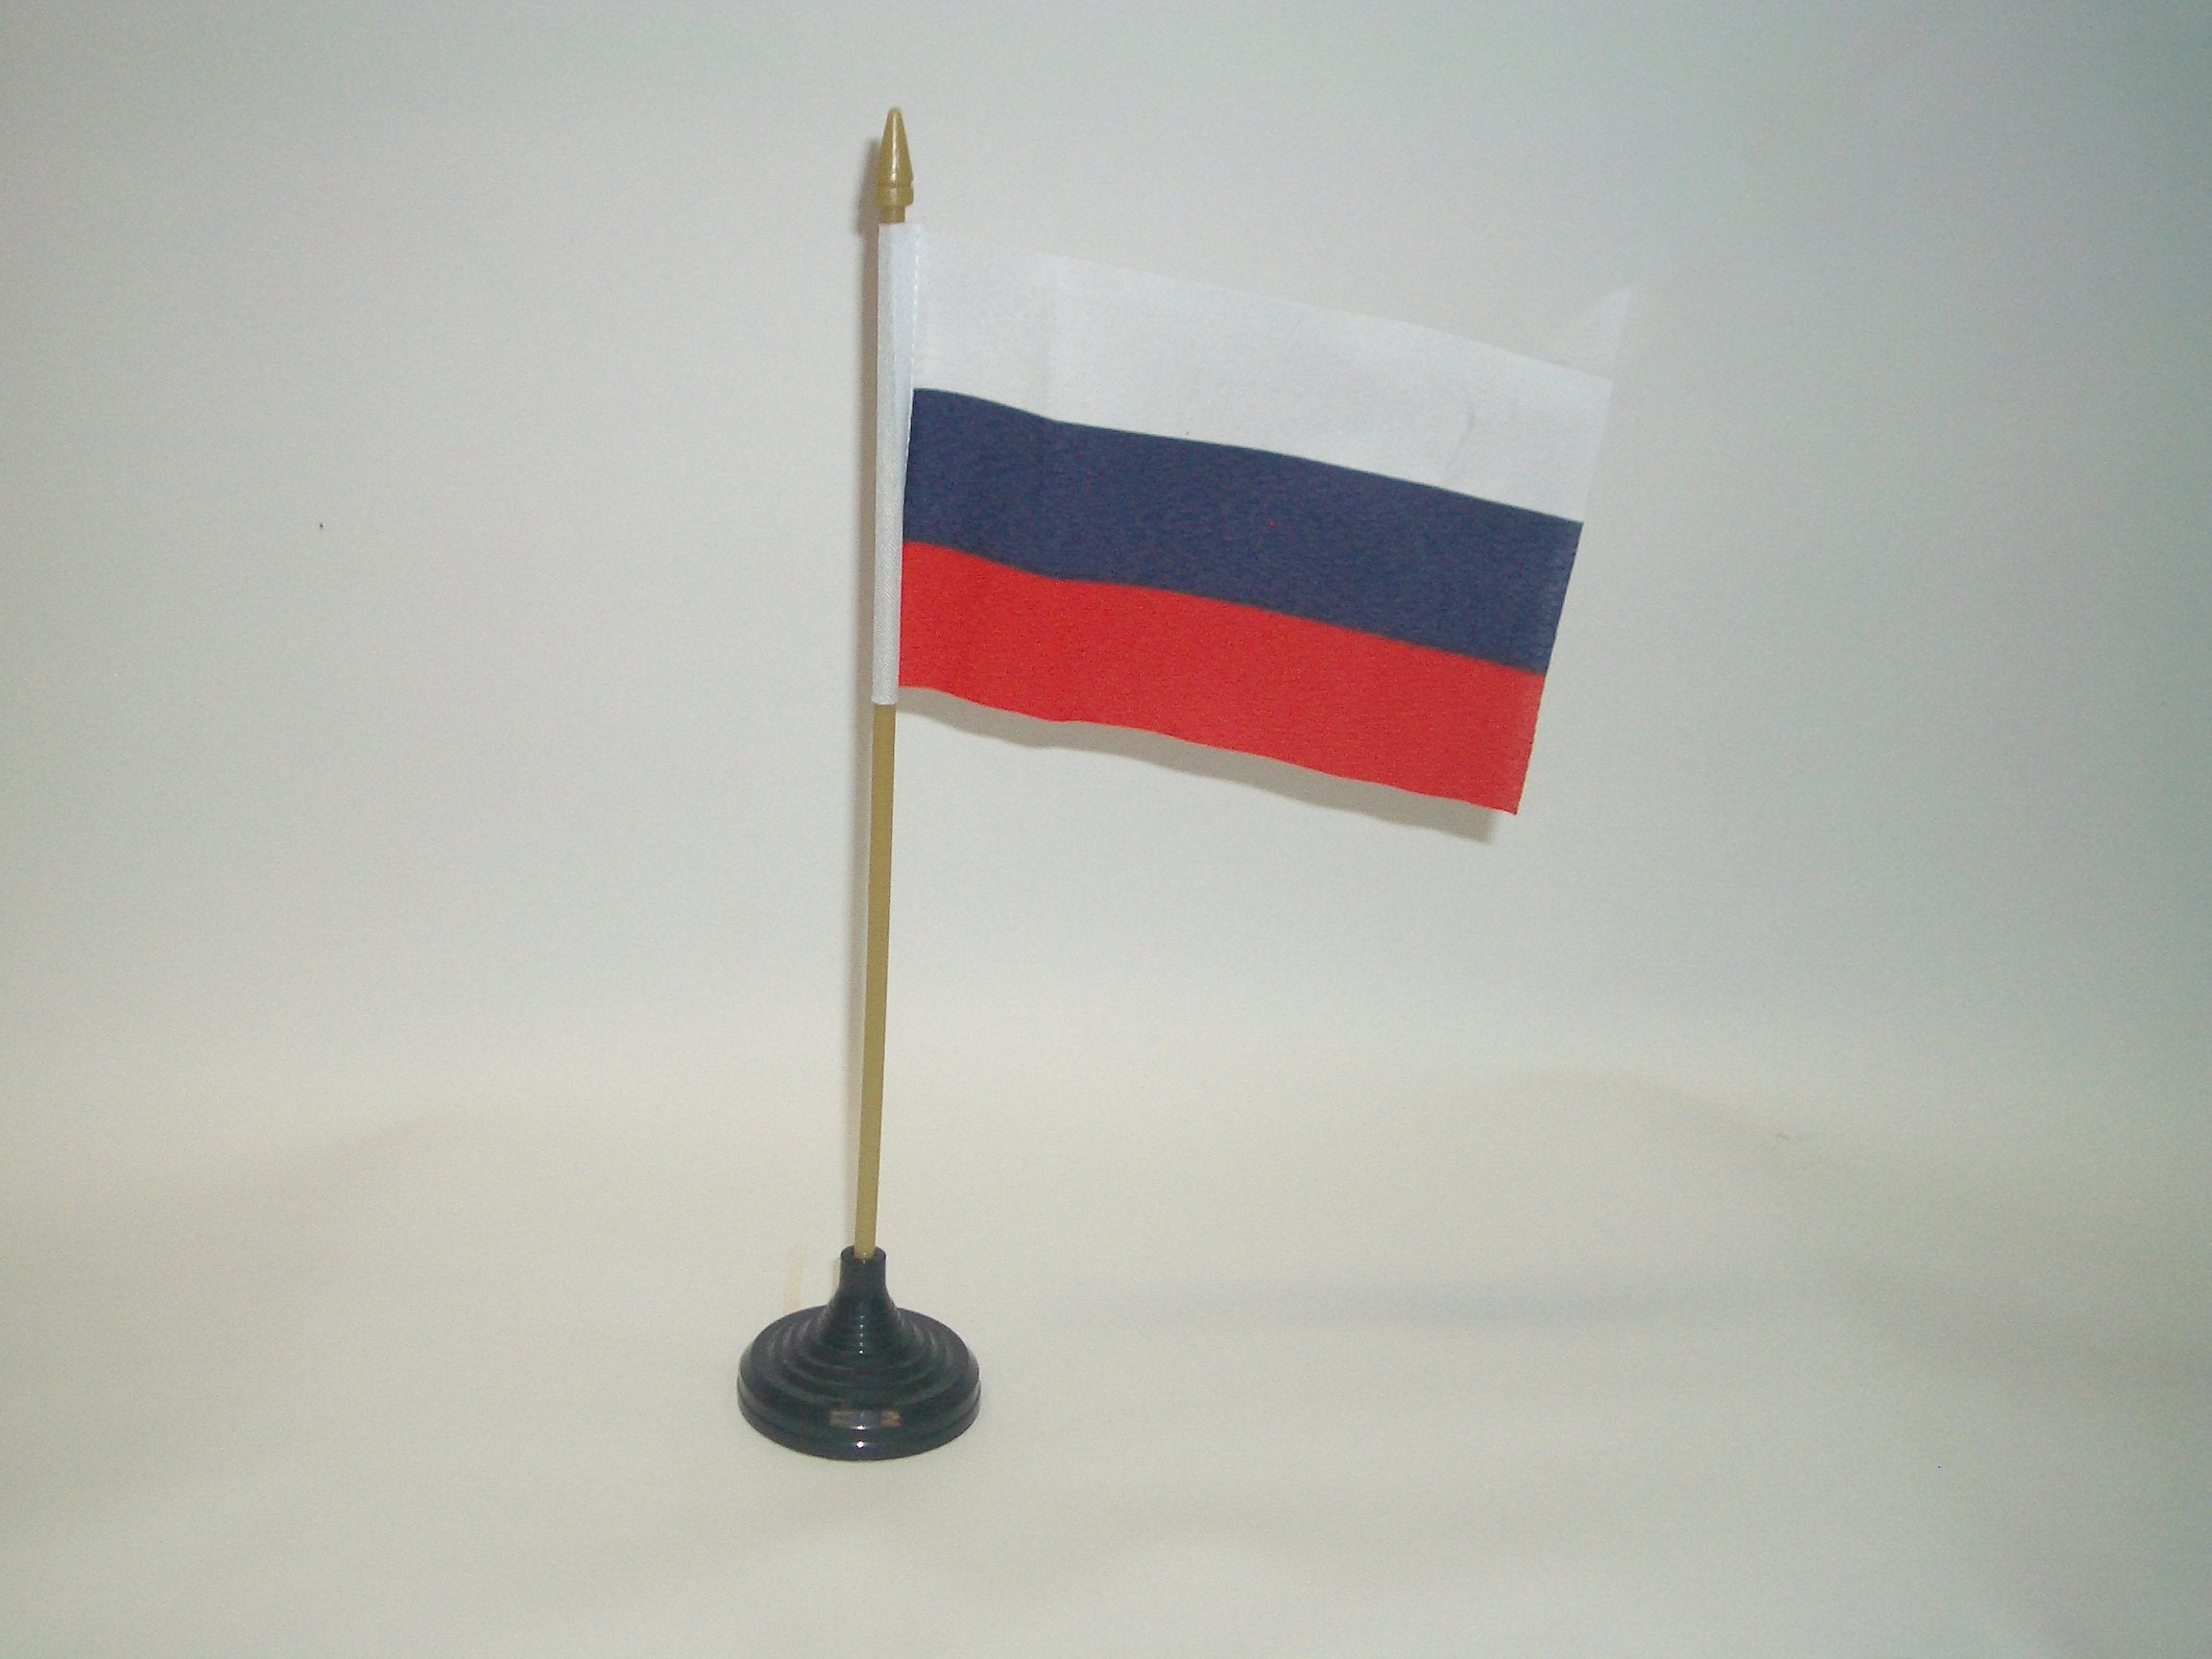 Flag Russian Federation 15x10cm Des